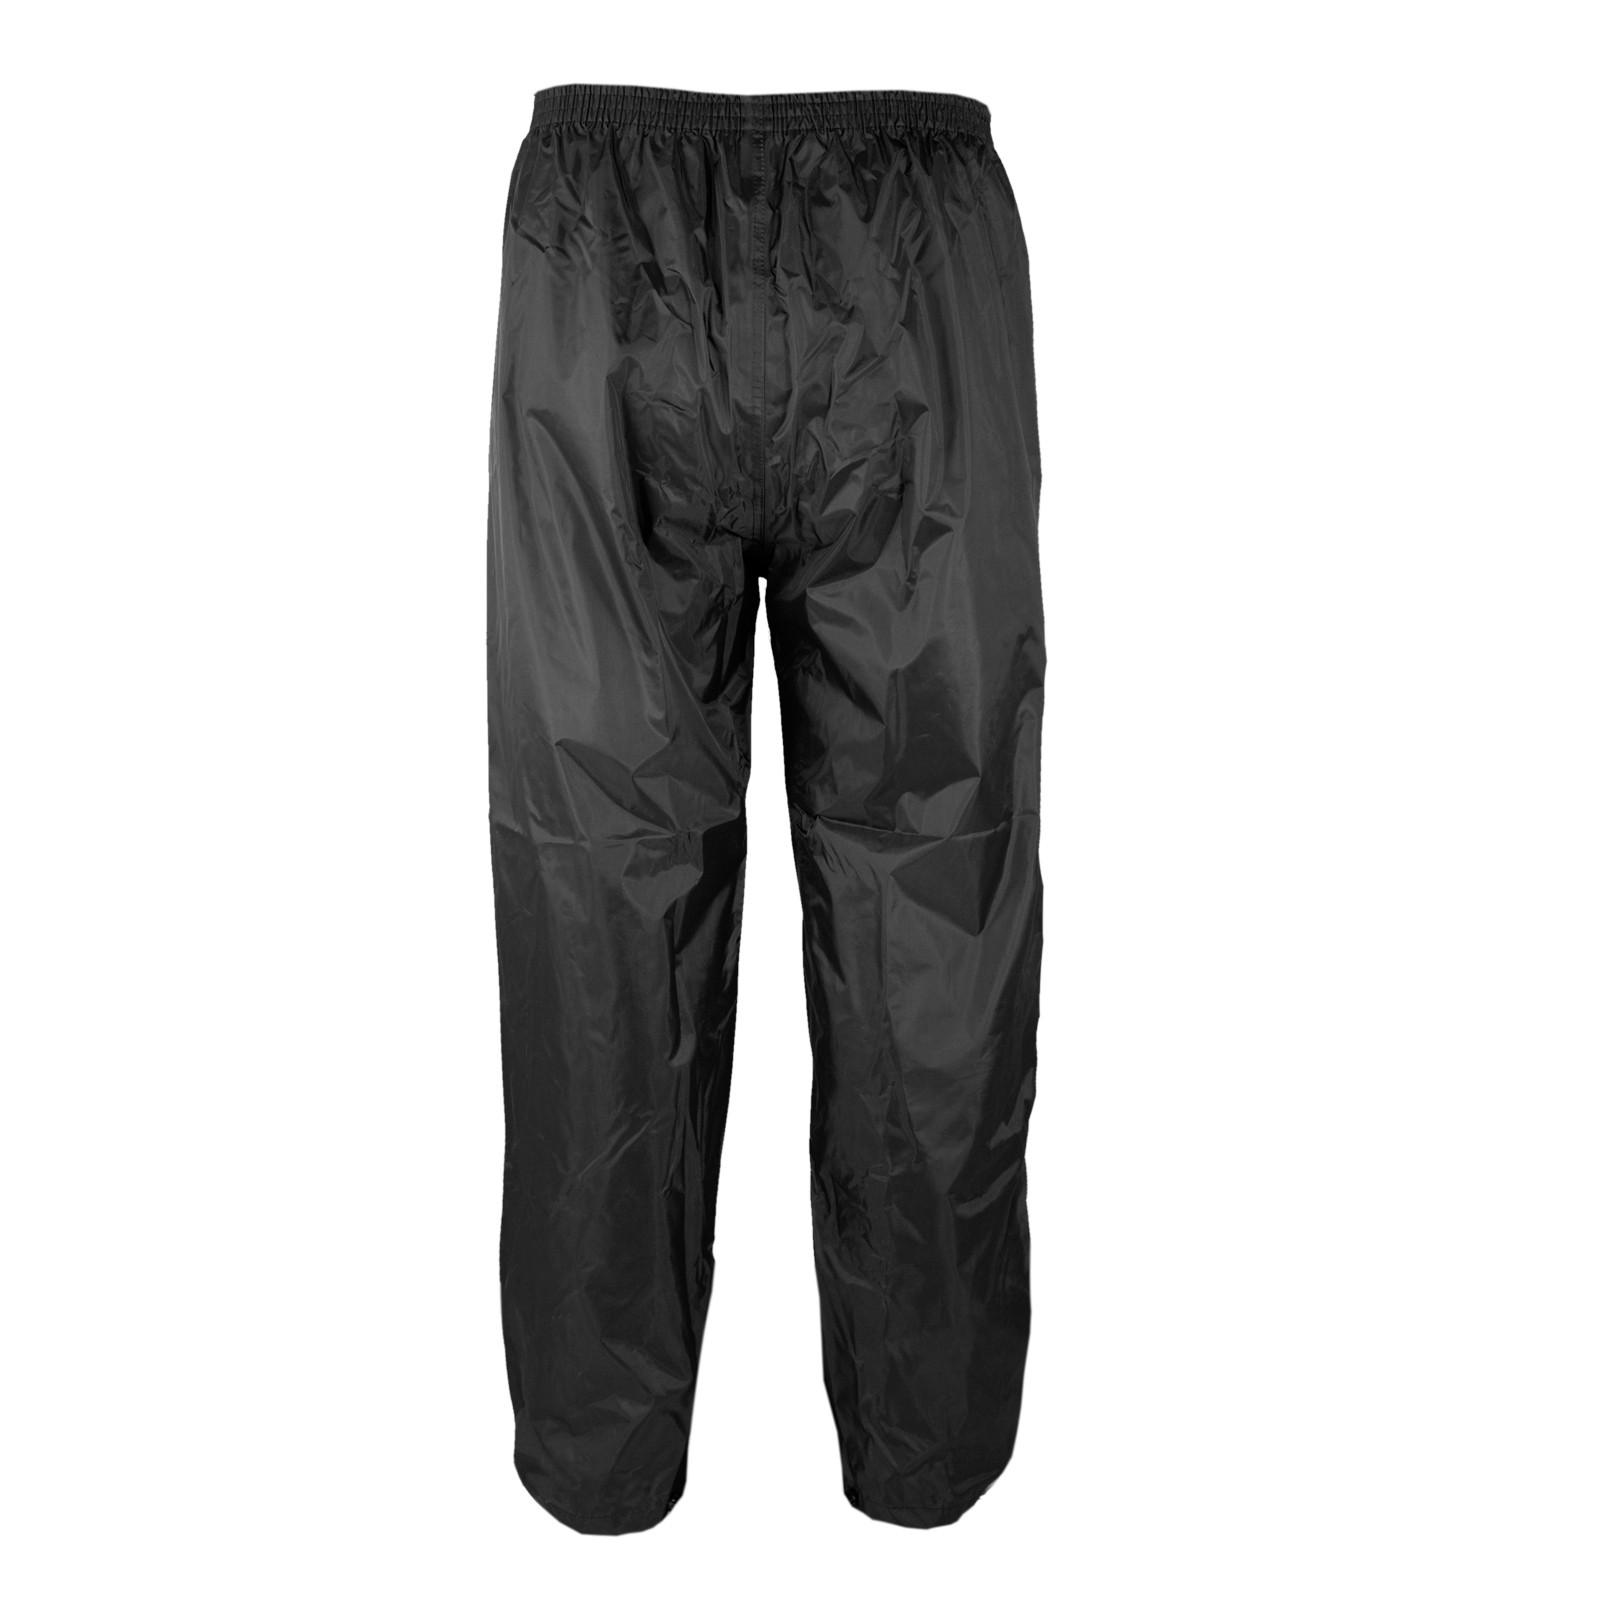 Abbigliamento Moto e Accessori - Anti Pioggia Acqua Impermeabile Tuta  Giacca Pantalone Copri Guanto Stivale Moto